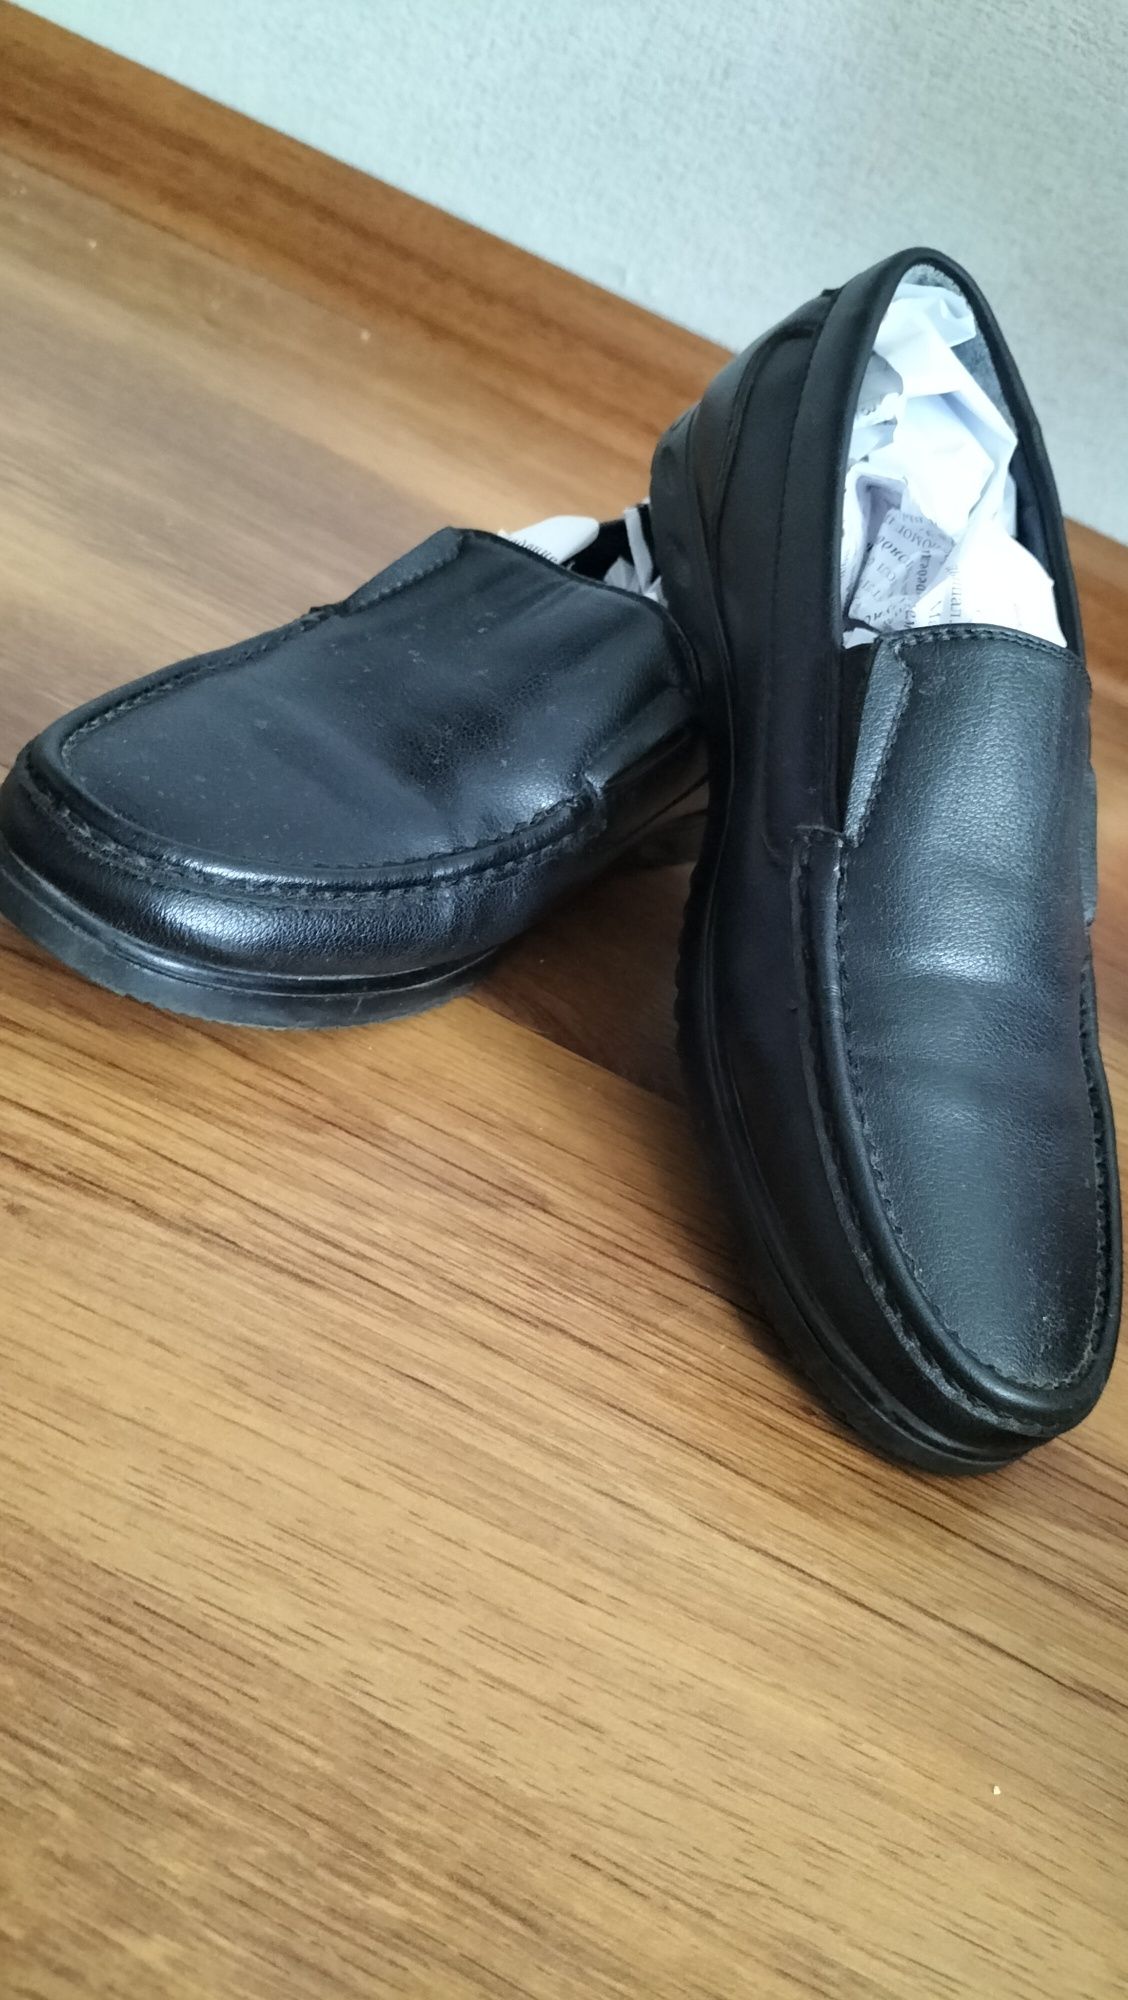 Обувь макаси, черного цвета